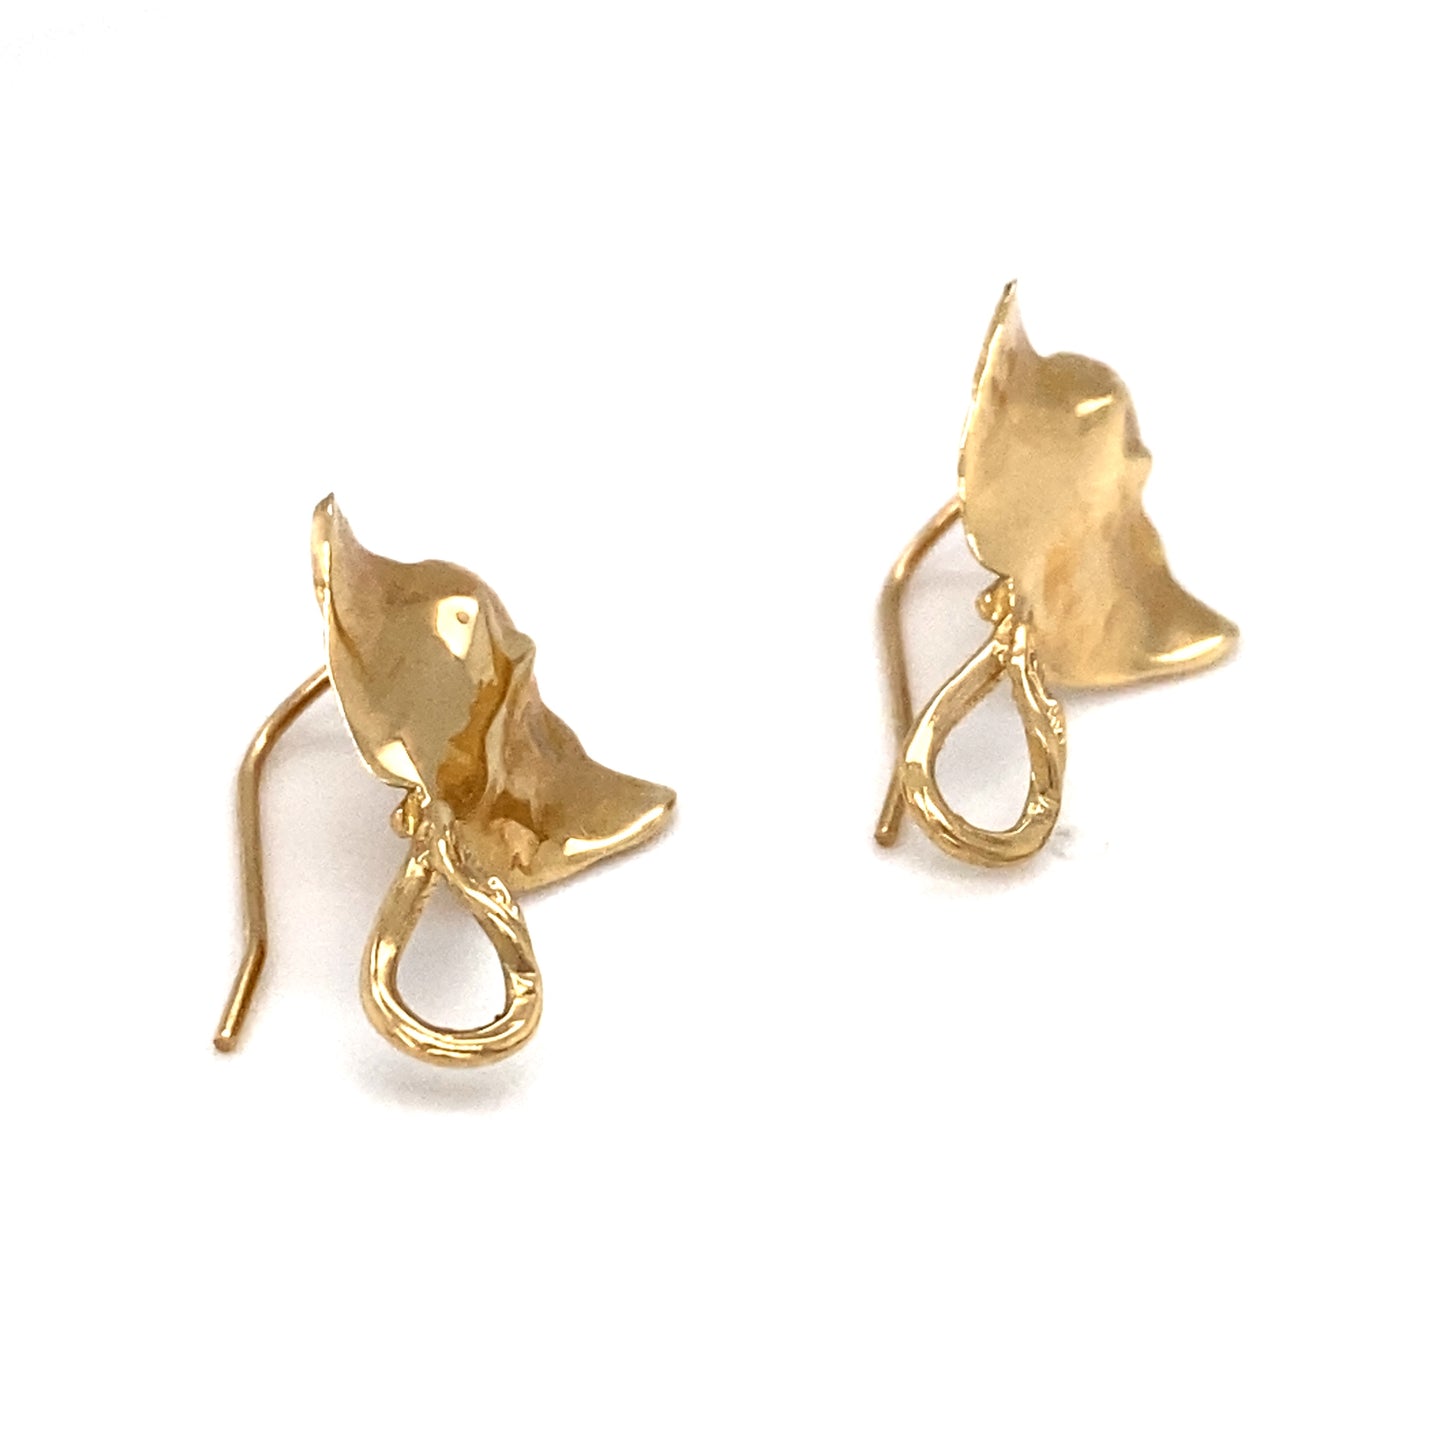 Circa 1950s Stingray Dangle Earrings in 14K Gold